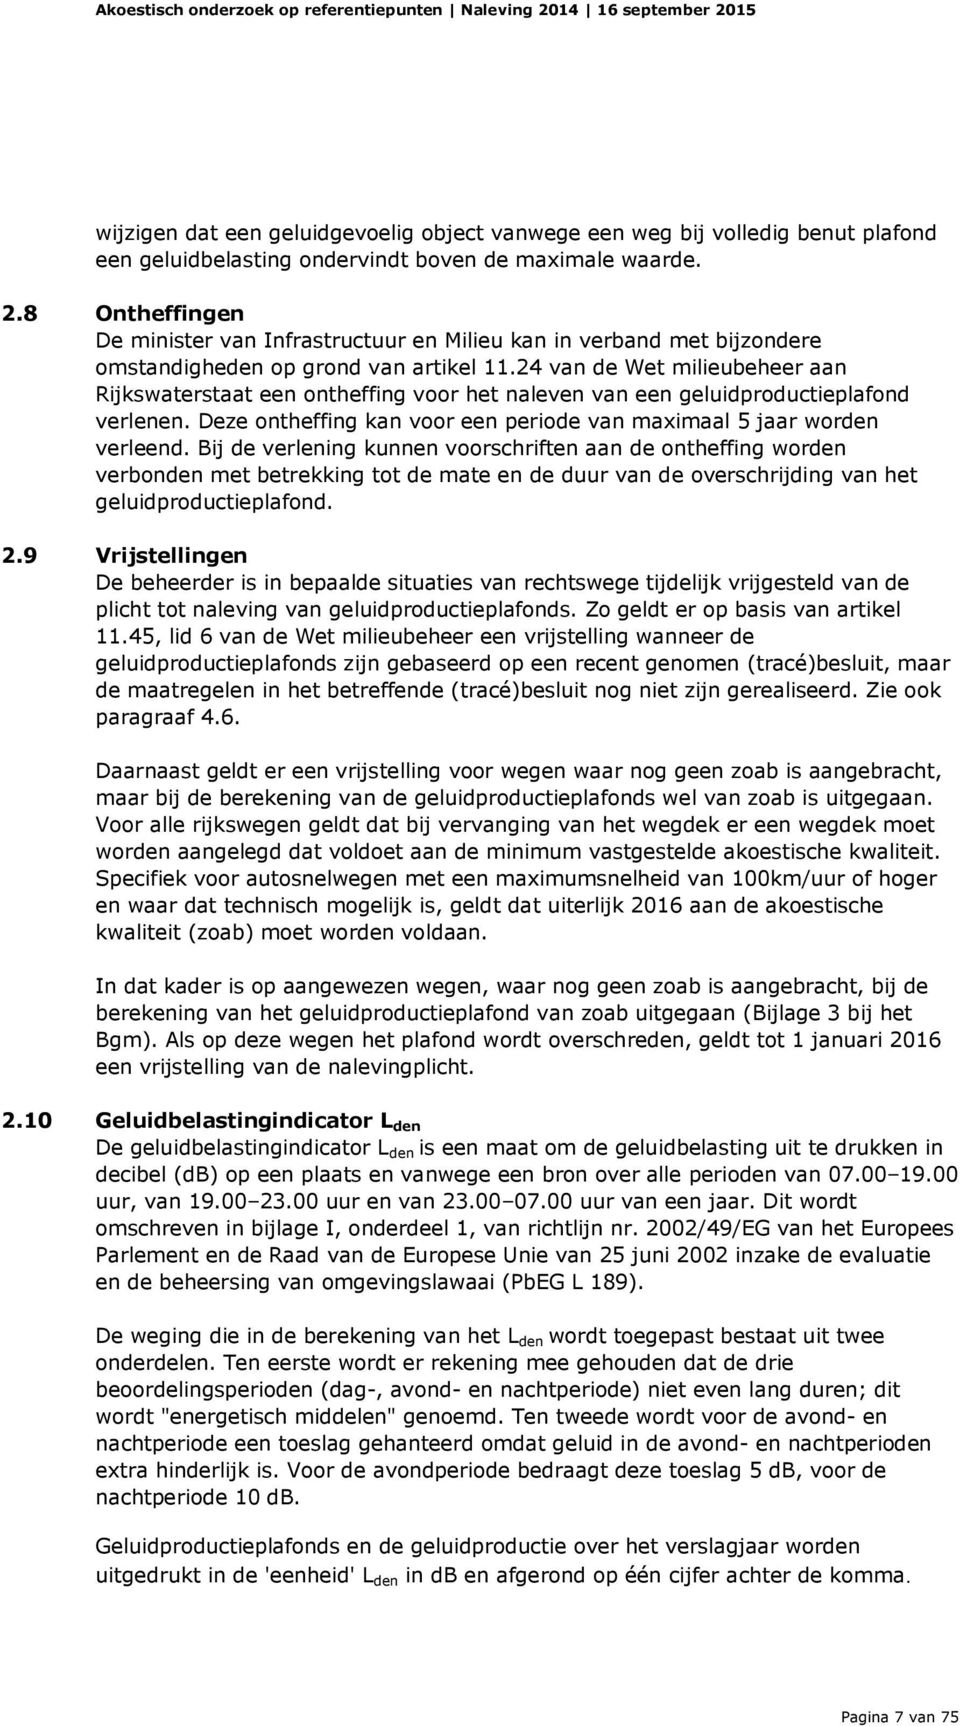 24 van de Wet milieubeheer aan Rijkswaterstaat een ontheffing voor het naleven van een geluidproductieplafond verlenen. Deze ontheffing kan voor een periode van maximaal 5 jaar worden verleend.